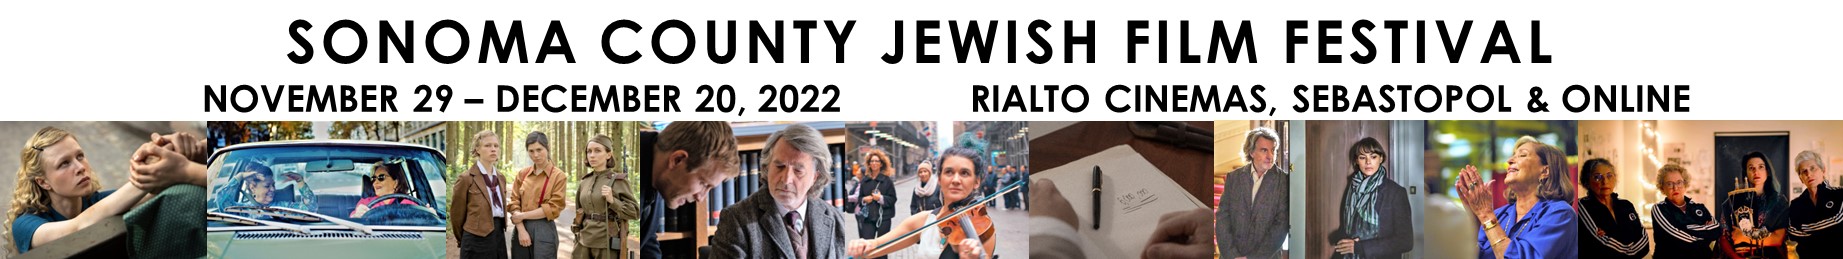 Sonoma County Jewish Film Festival 2022